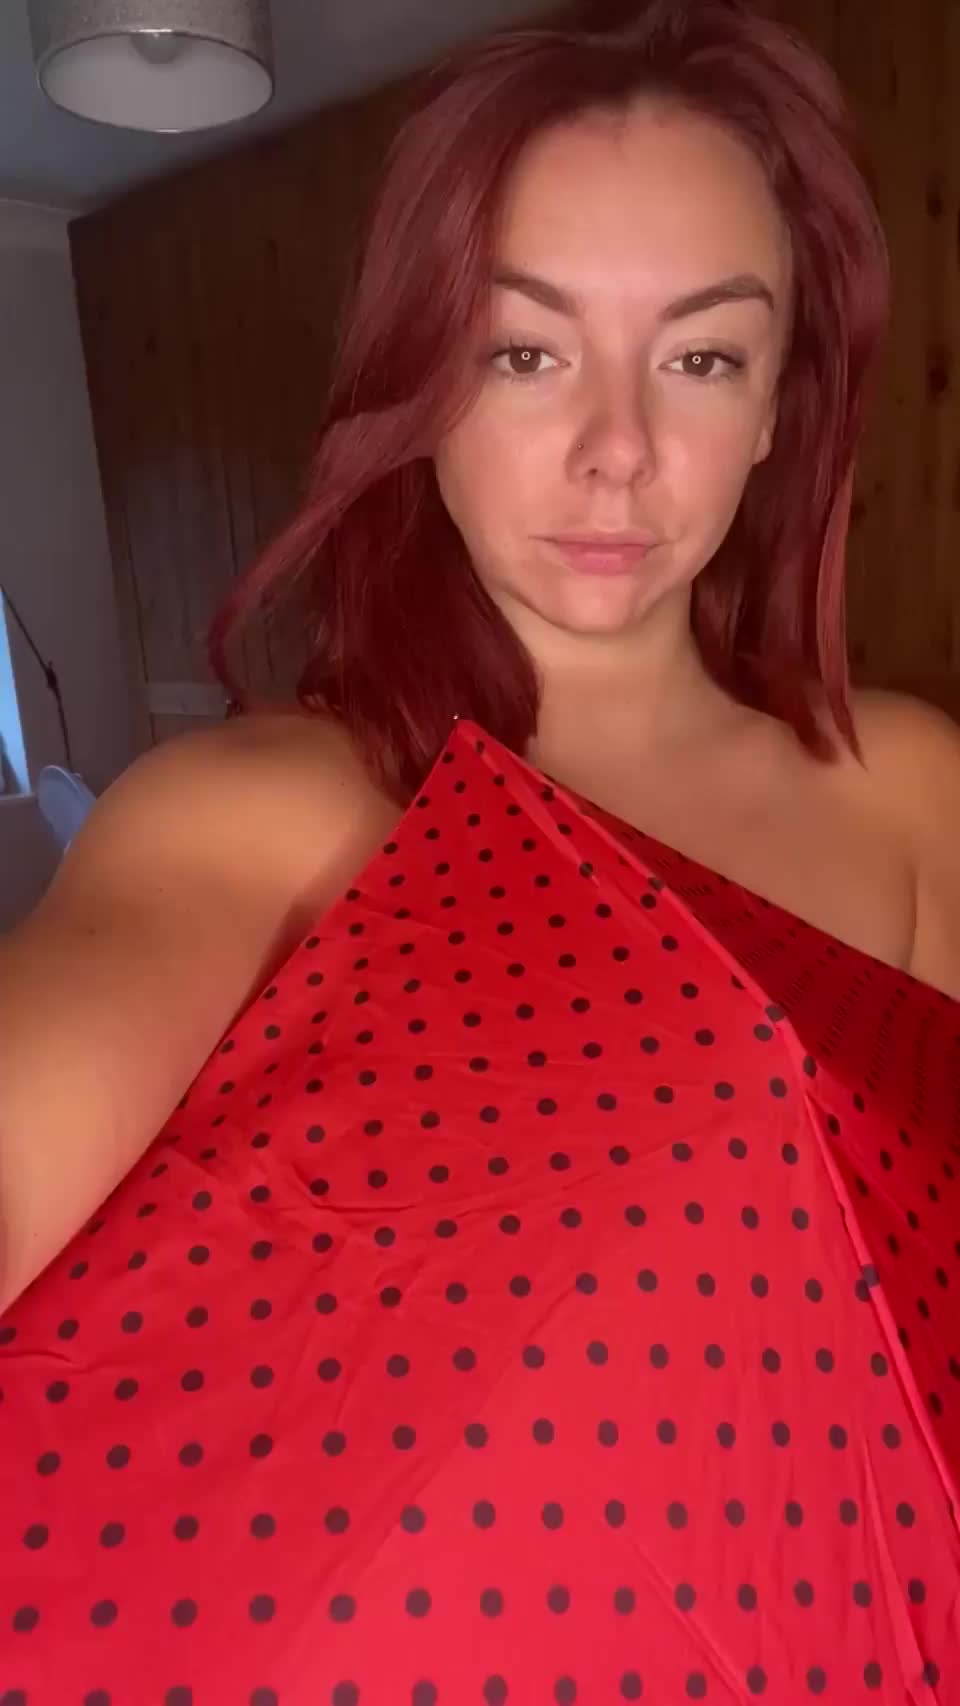 mayyy22 cute redhead tits